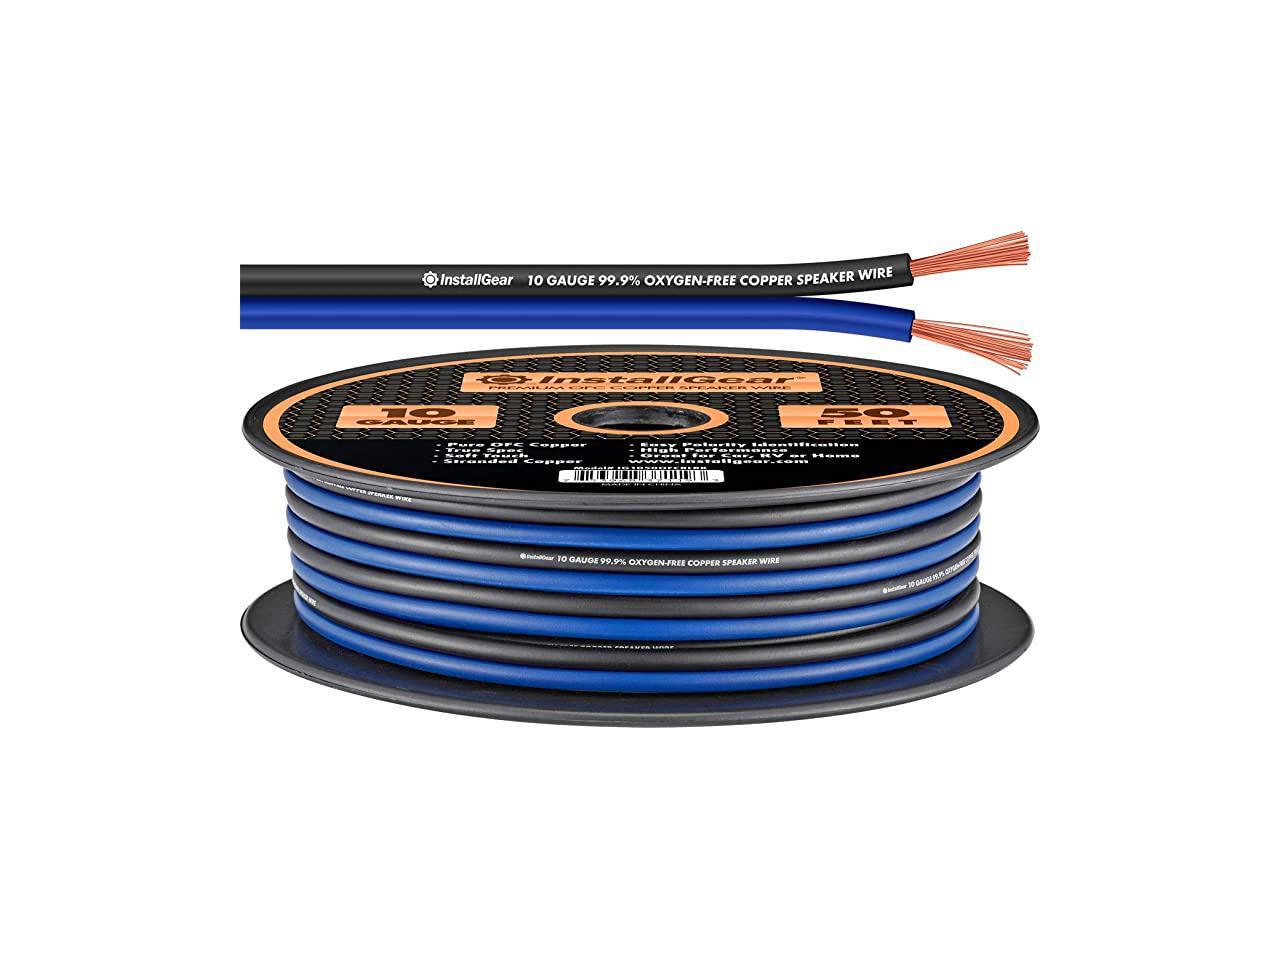 OFC 50-feet - Blue/Black 99.9% Oxygen-Free Copper InstallGear 10 Gauge Speaker Wire 